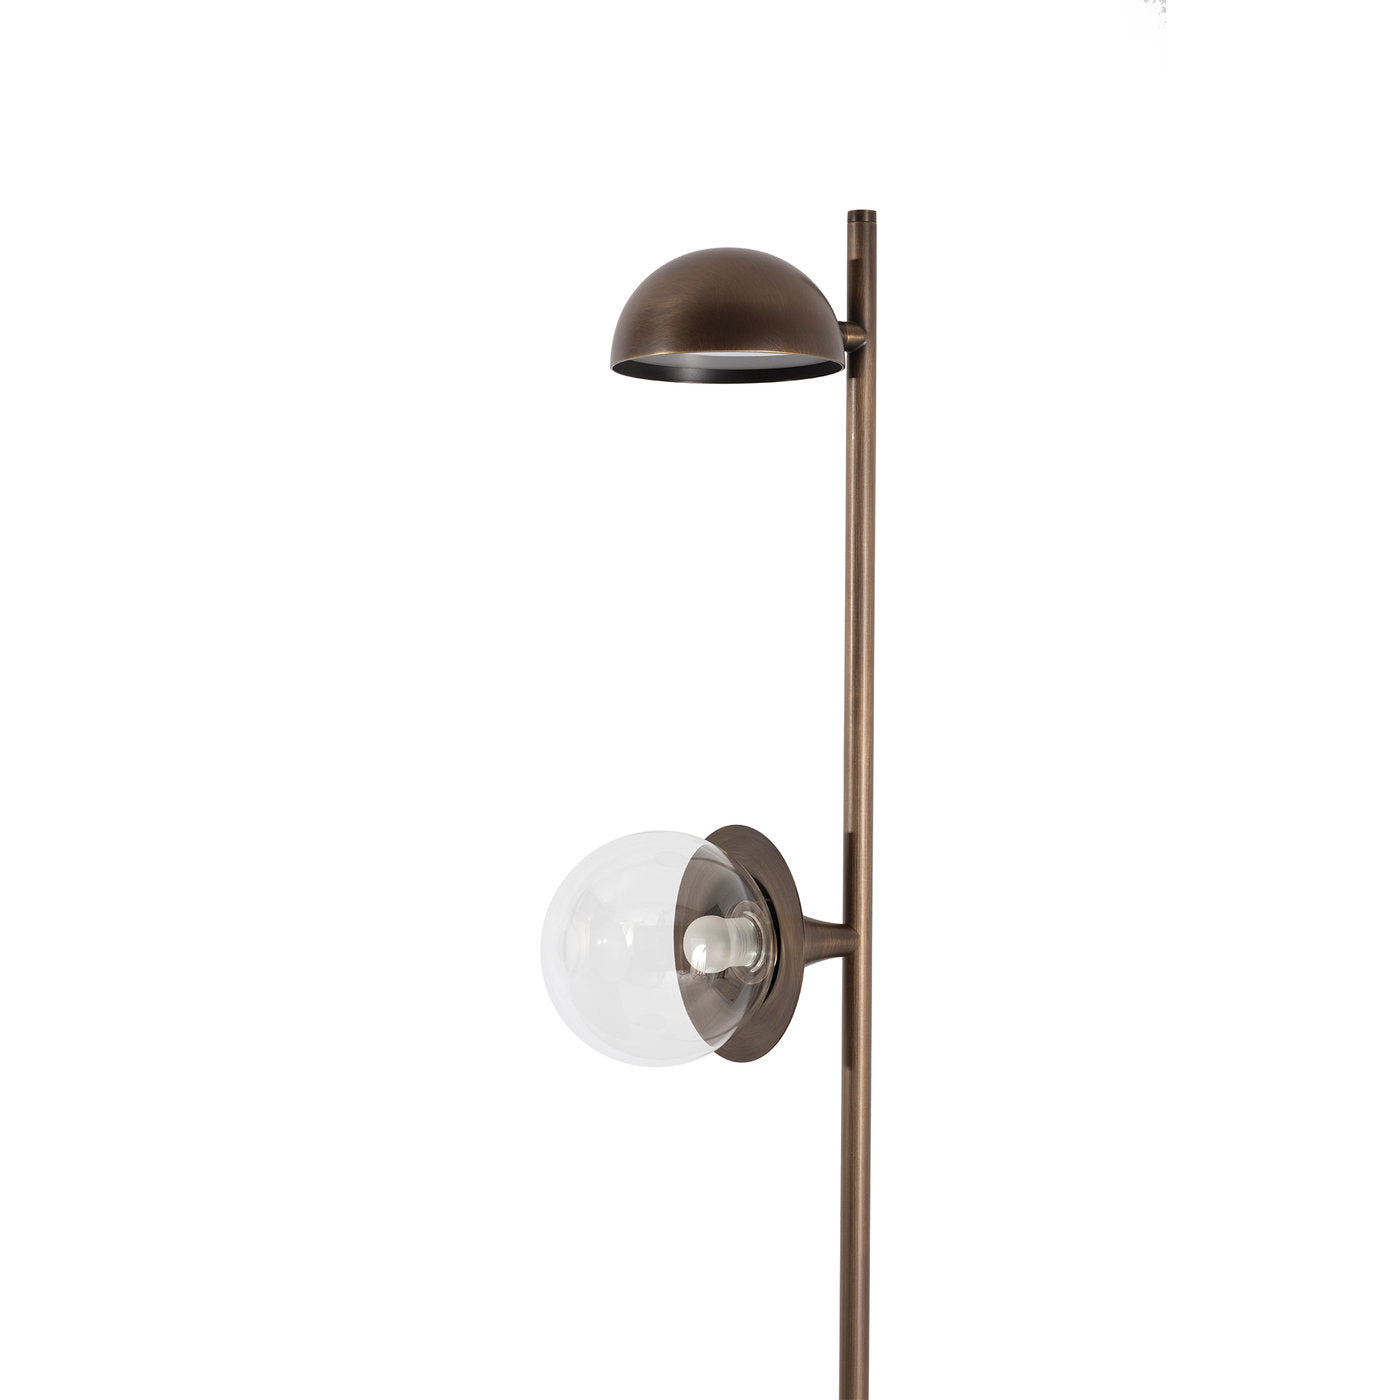 Bricola Floor Lamp by Ciarmoli Queda Studio - Alternative view 1